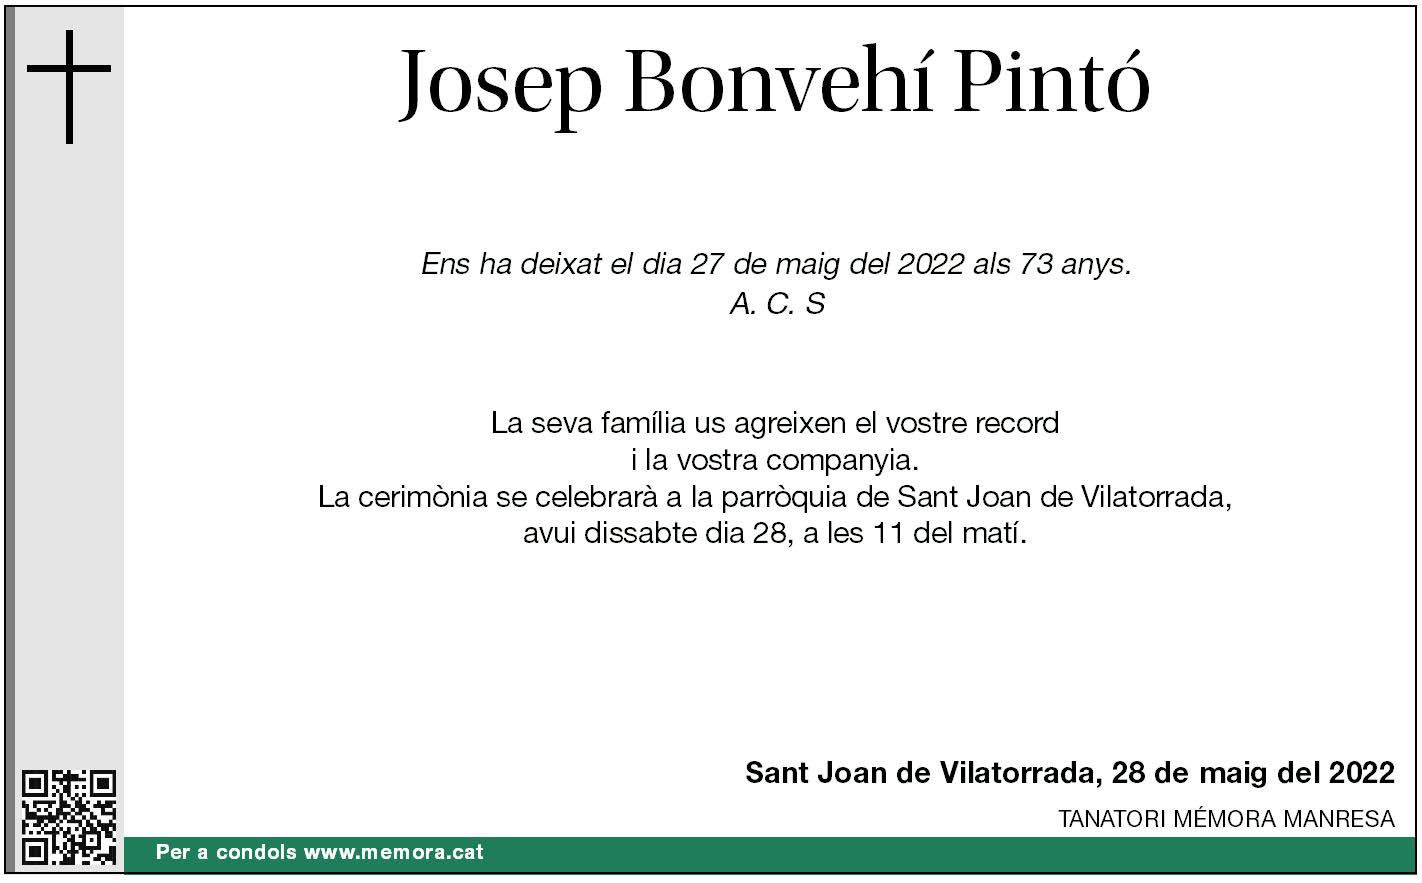 JOSEP BONVEHÍ PINTÓ